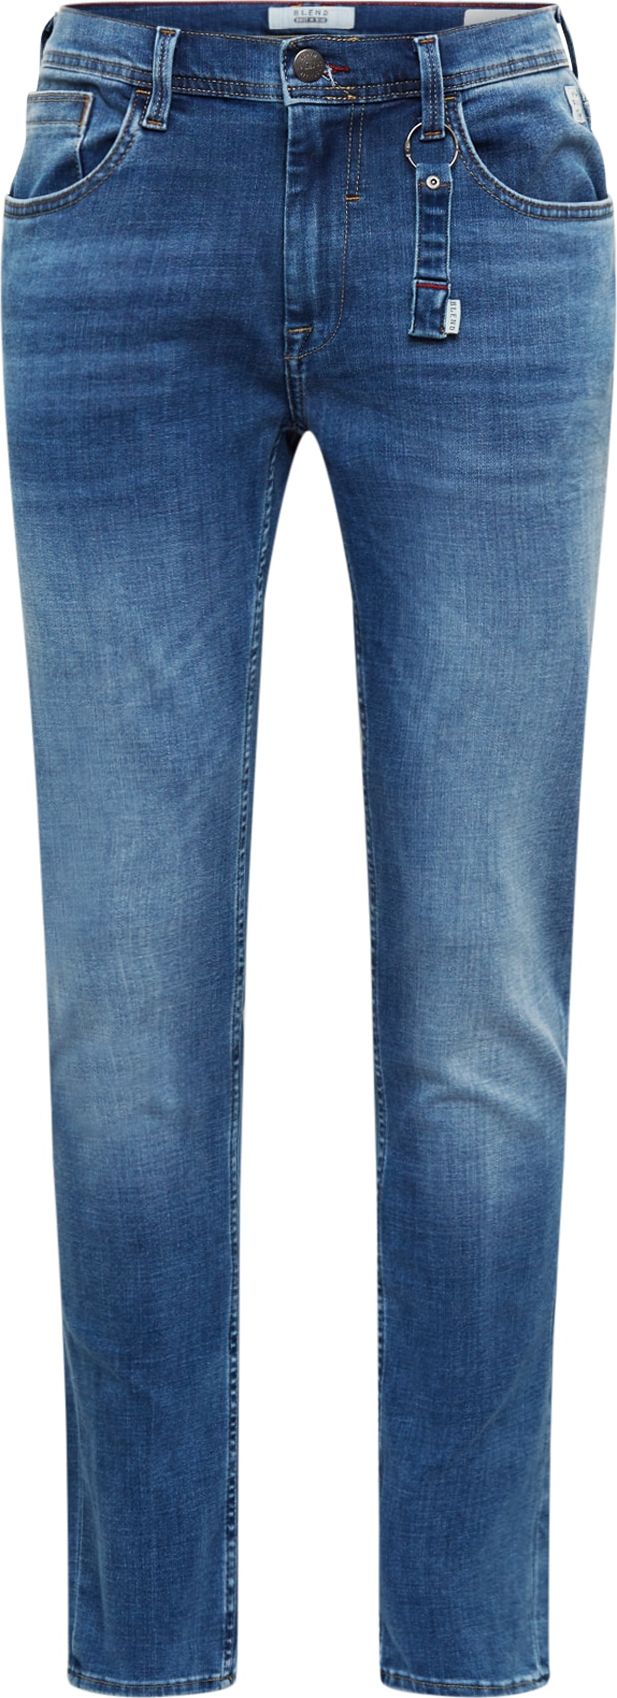 BLEND Džíny 'Jeans multiflex_pro - Noos' modrá džínovina